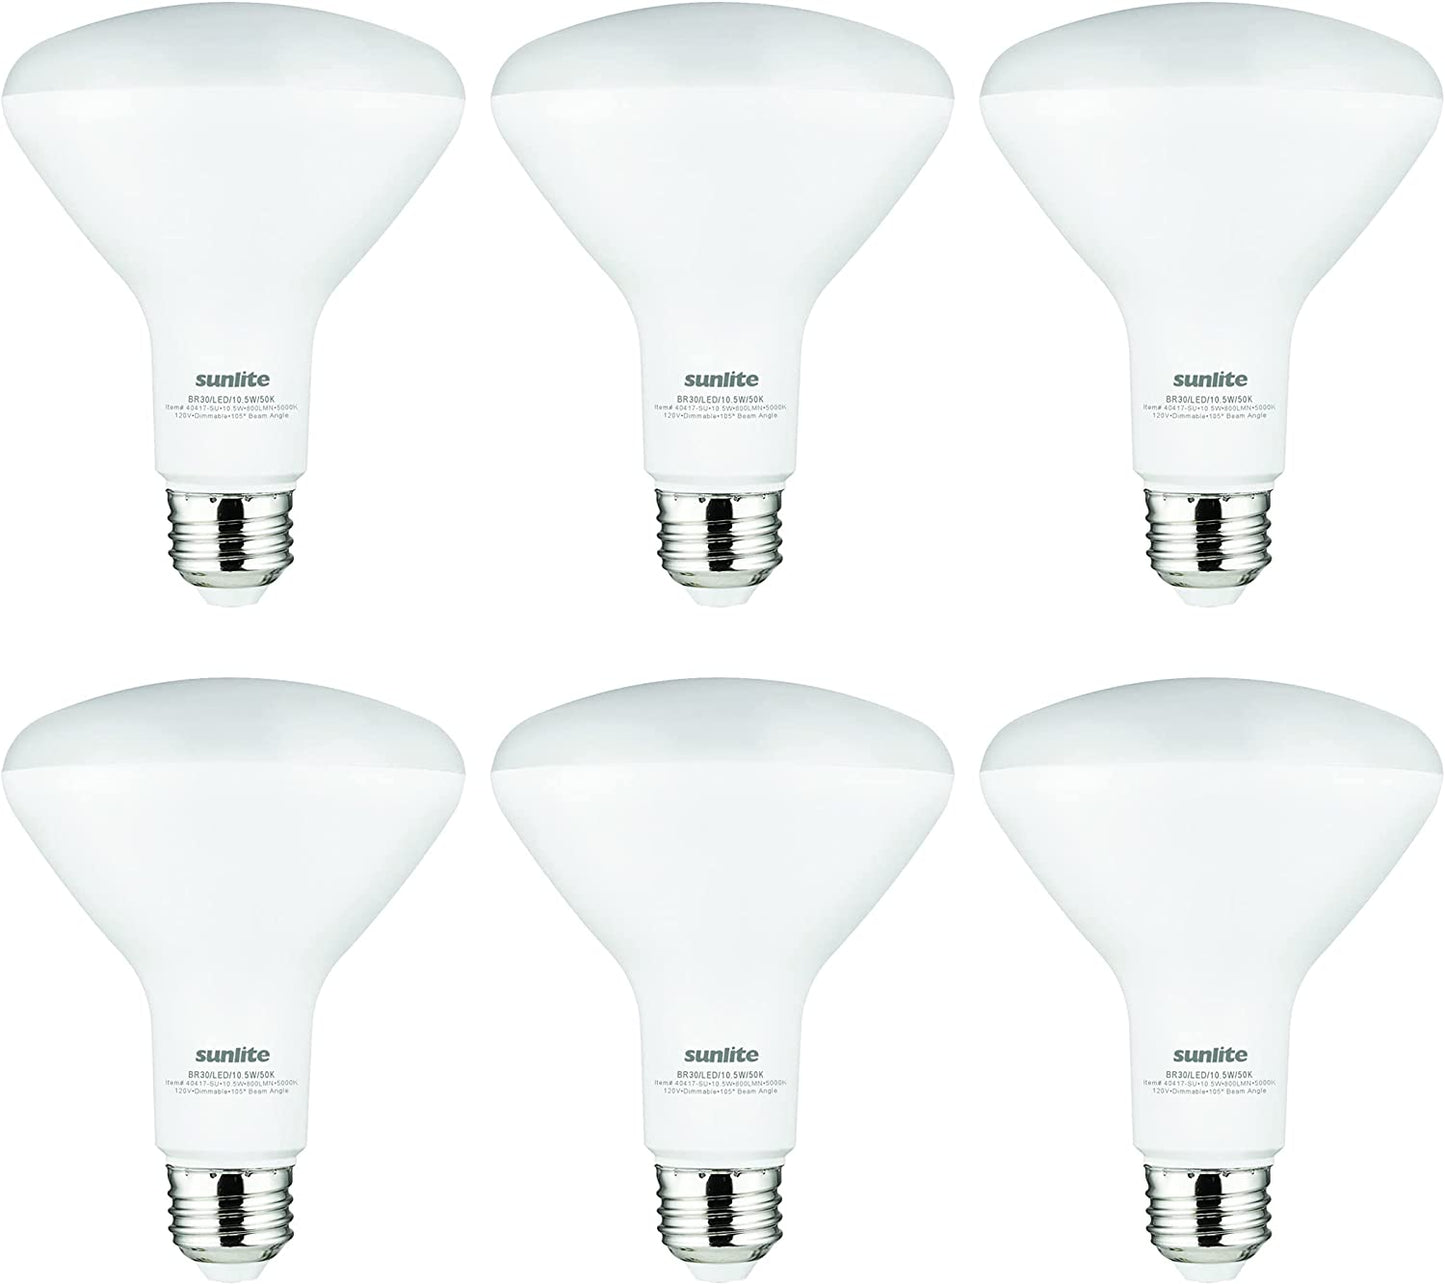 Sunlite 81397 LED BR30 Recessed Light Bulb, 10.5 Watt (65w equivalent), 800 Lumens, Medium E26 Base, Dimmable Flood-Light, UL Listed, 5000K Super White, Pack of 6